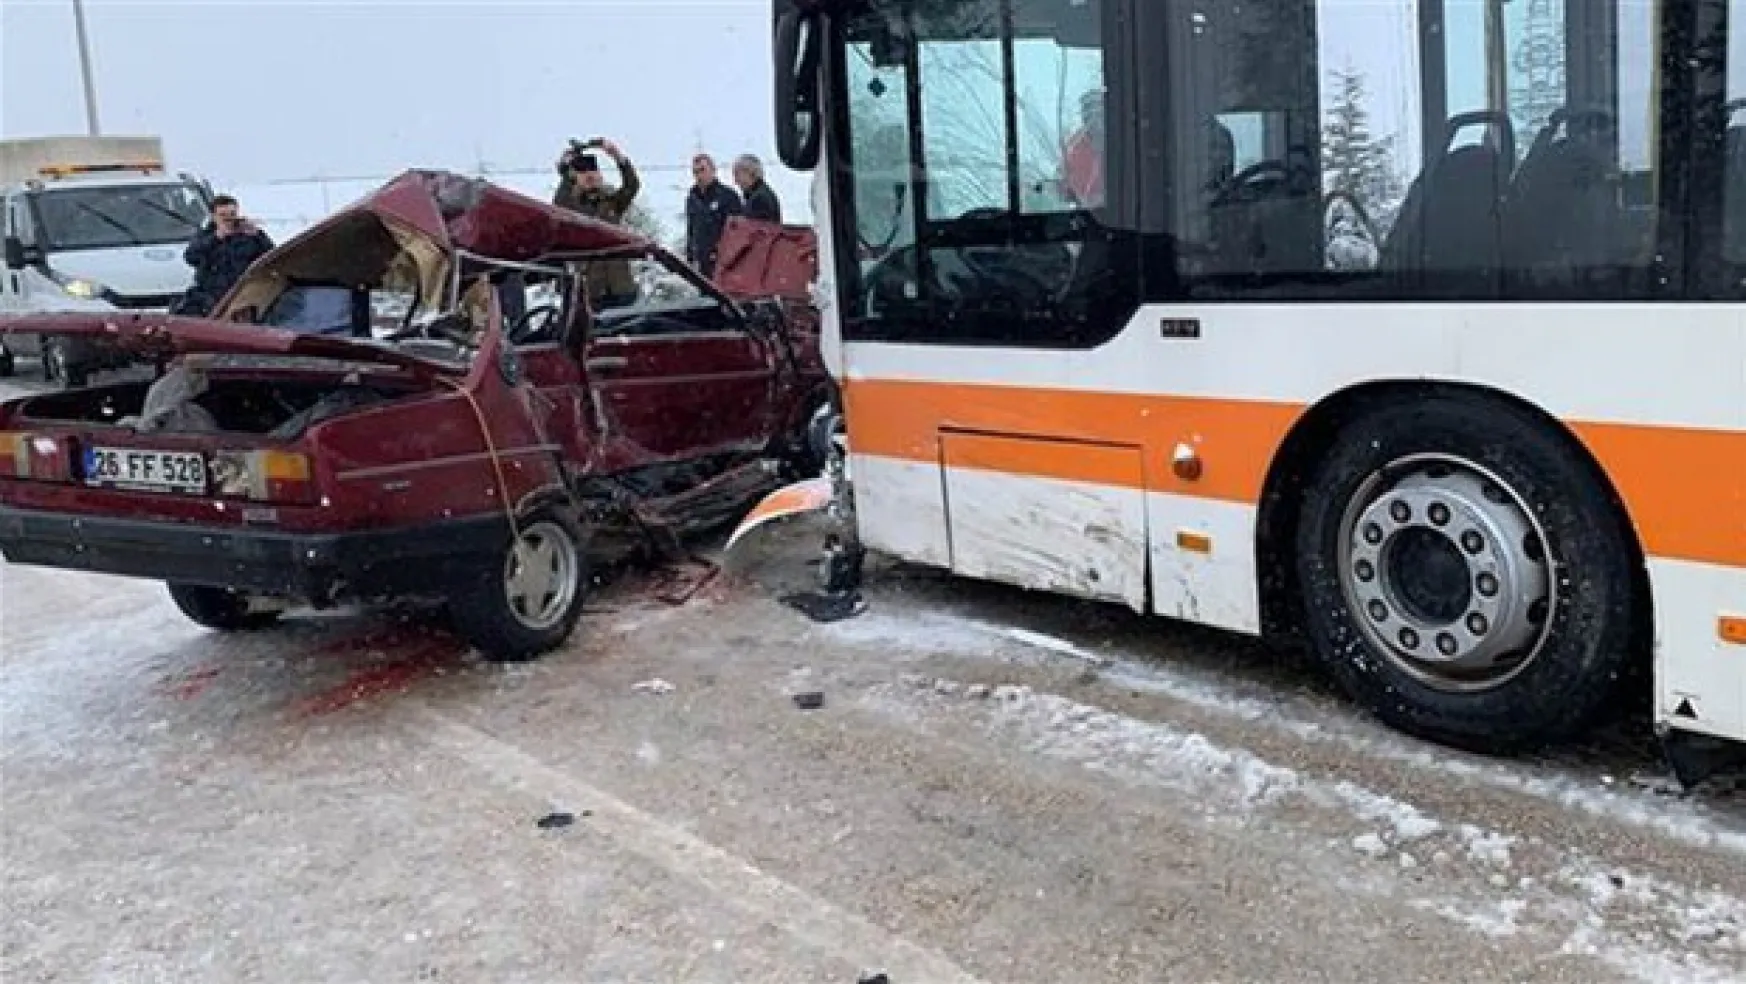 Eskişehir'de trafik kazası: 2 ölü